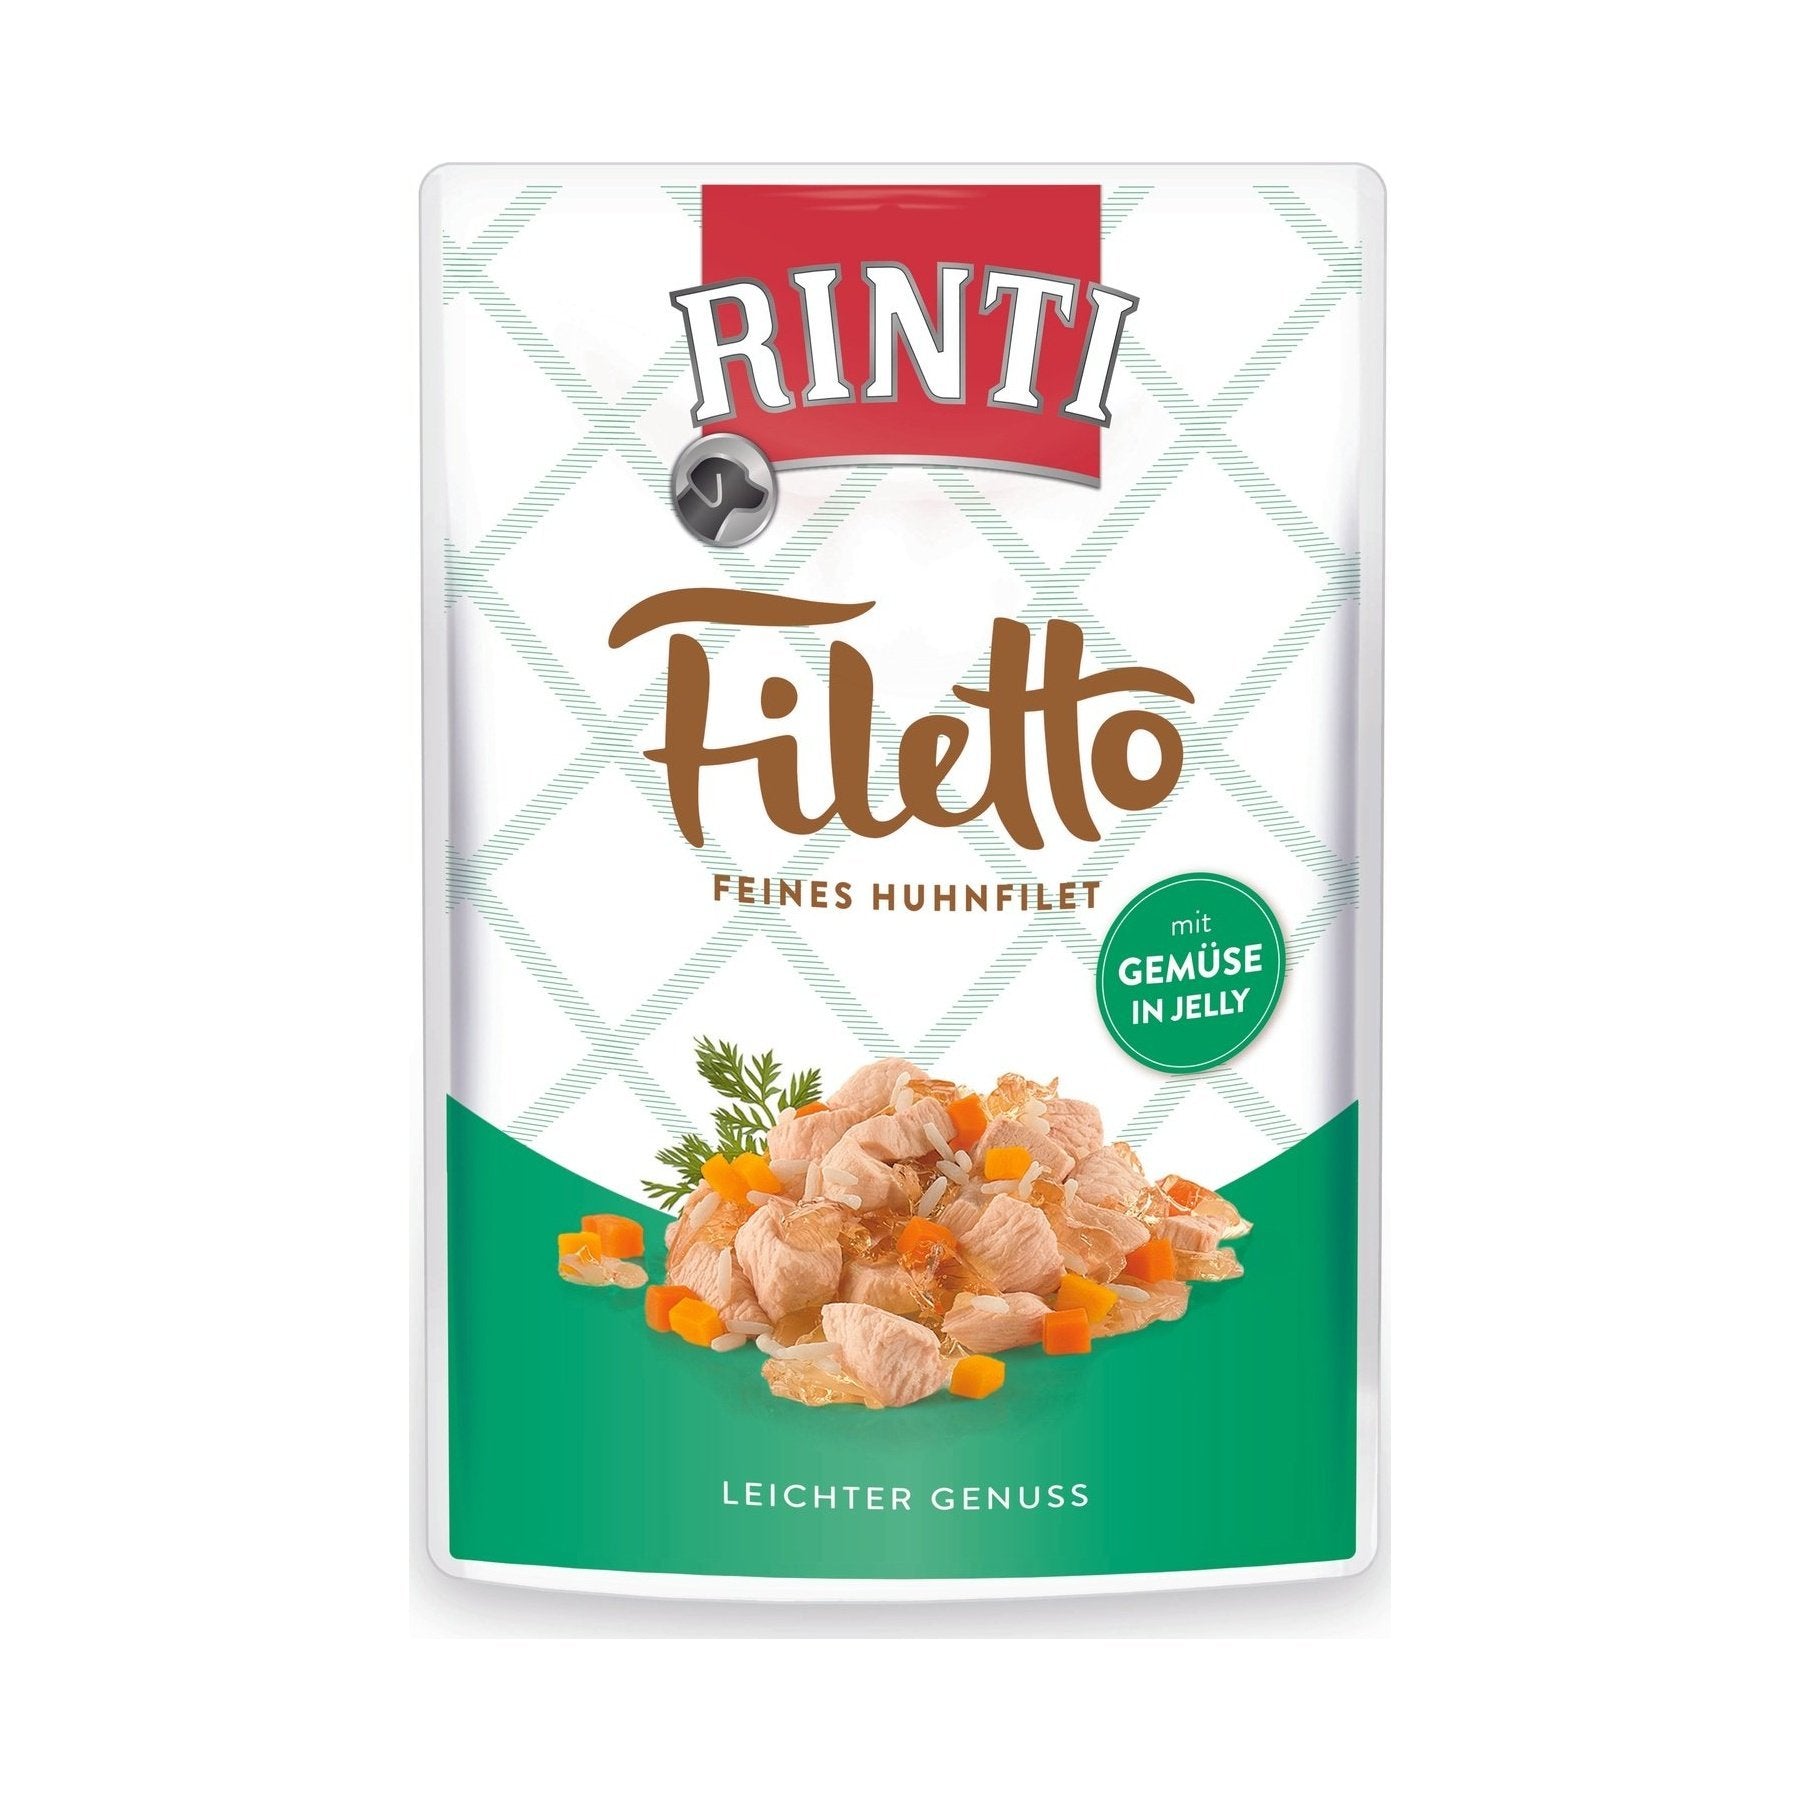 Artikel mit dem Namen Rinti Filetto Jelly Huhn &amp; Gemüse im Shop von zoo.de , dem Onlineshop für nachhaltiges Hundefutter und Katzenfutter.